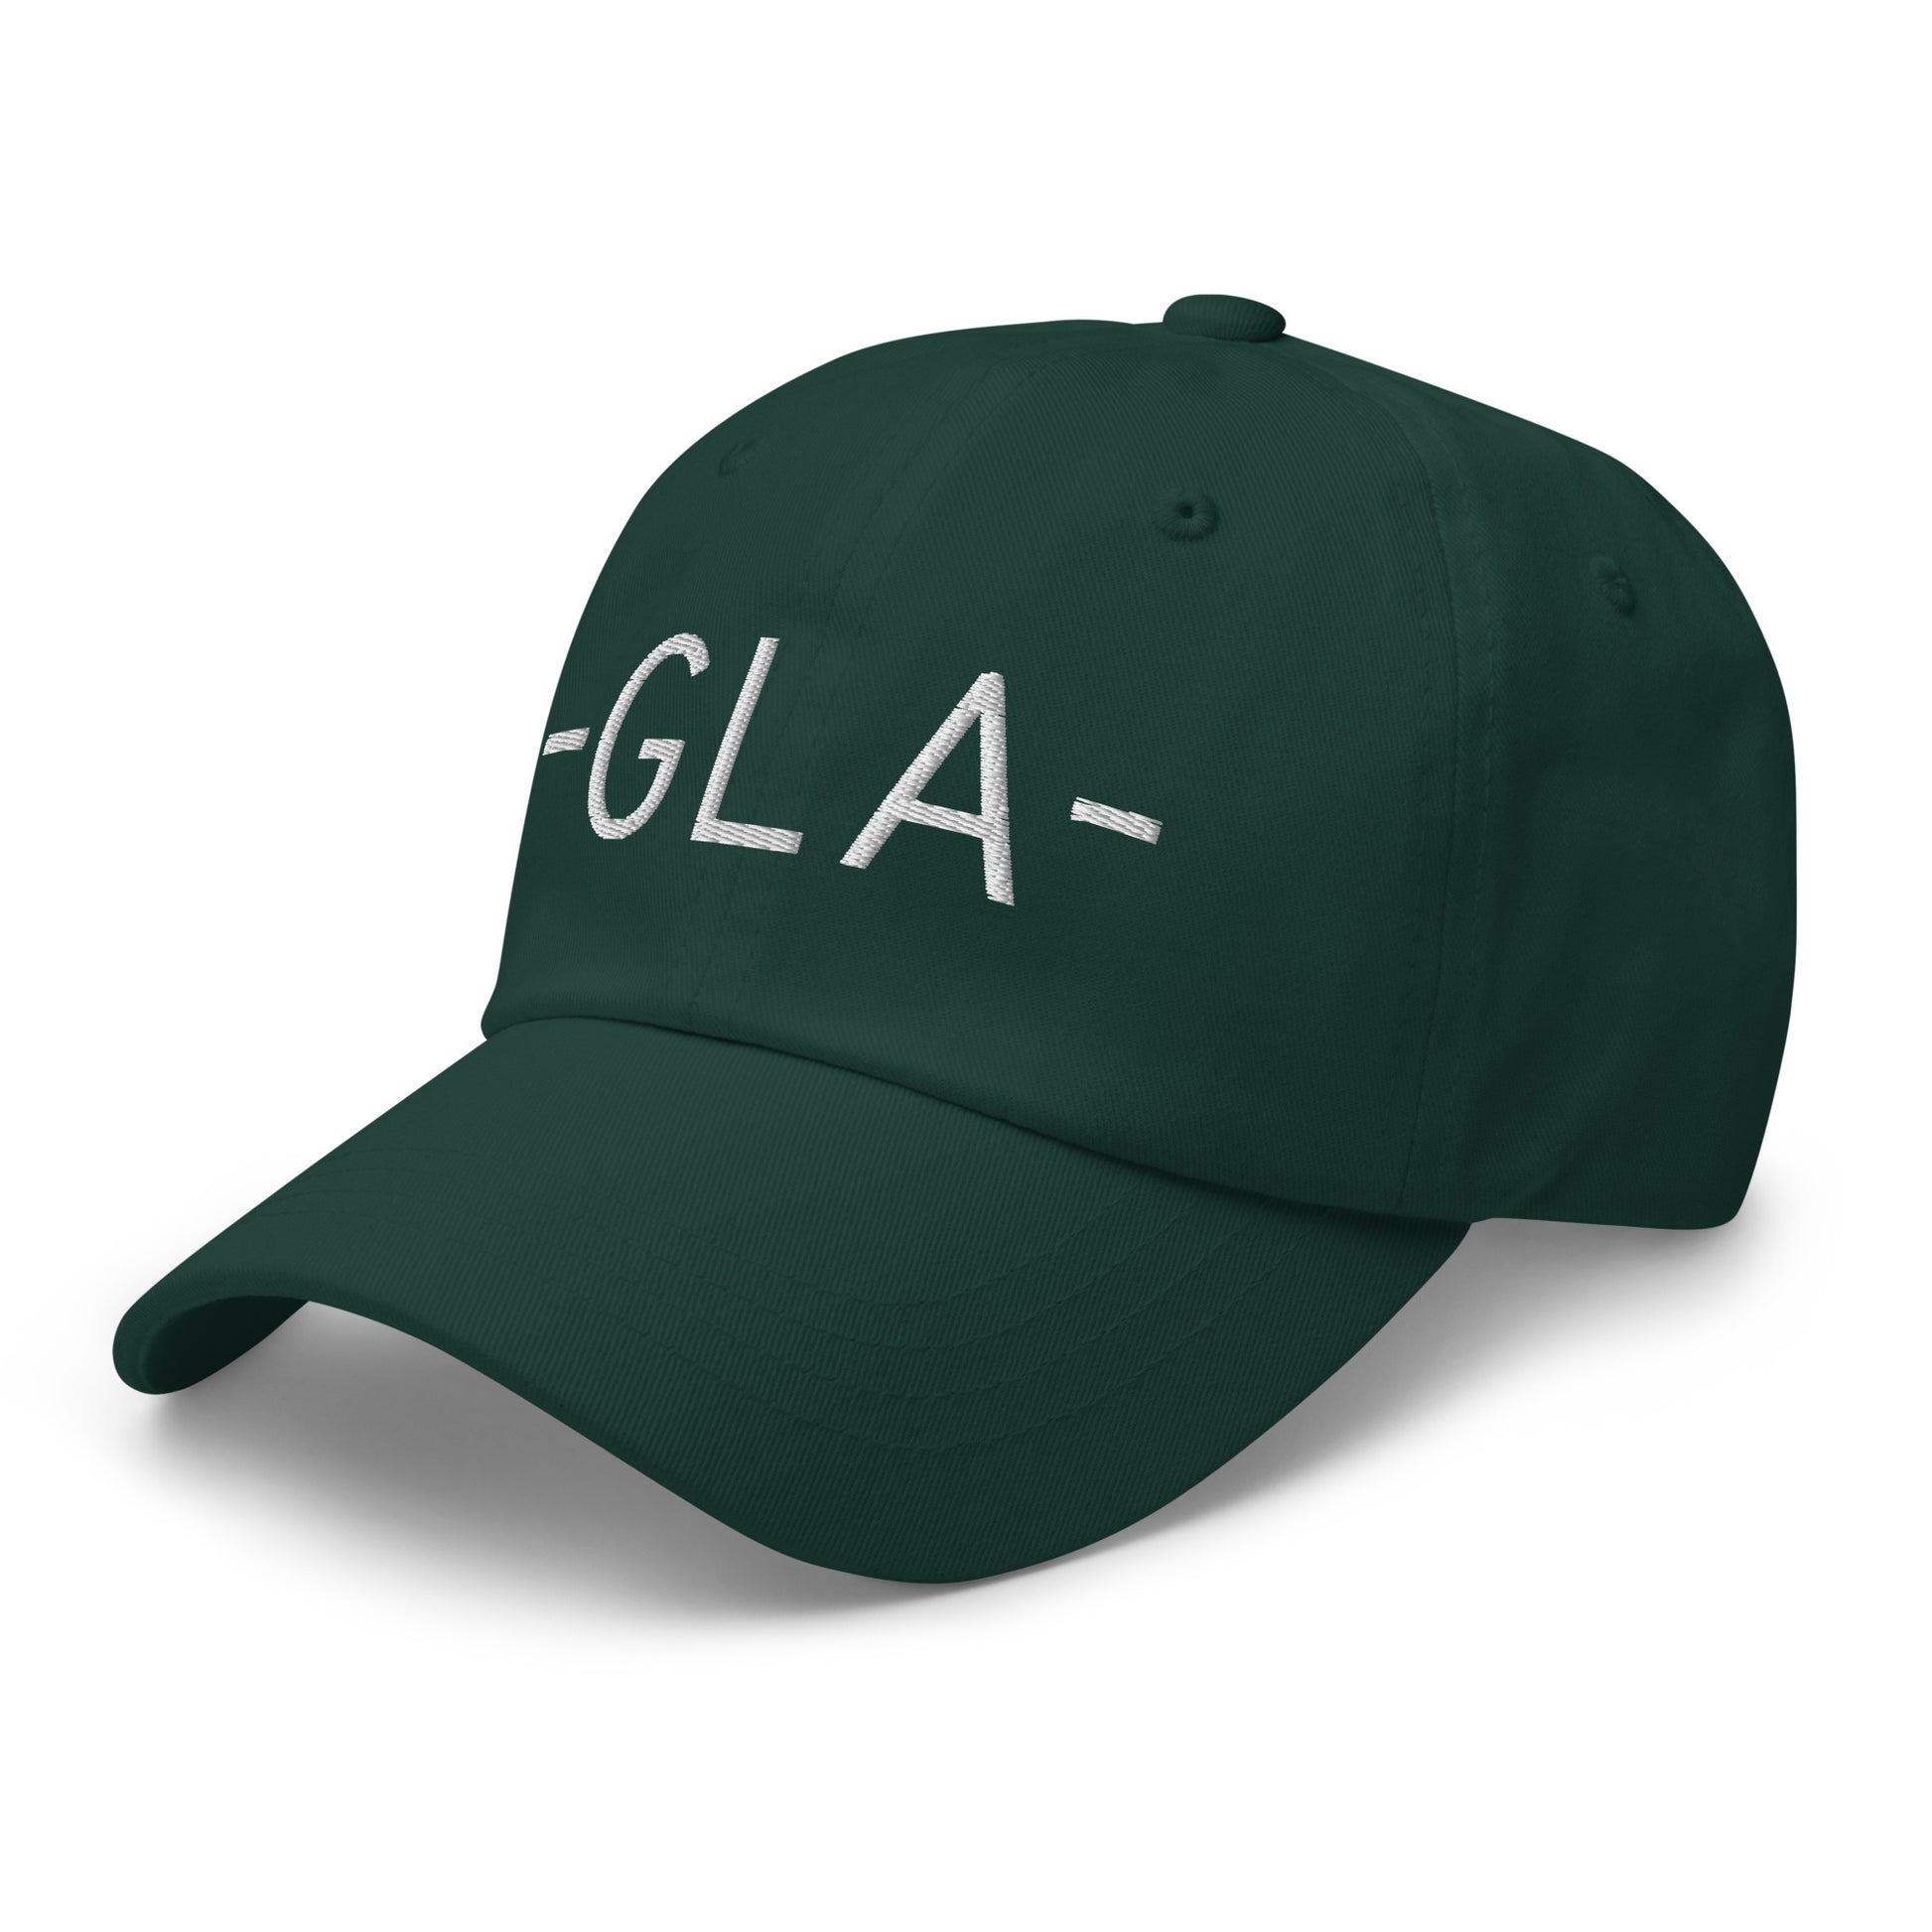 Souvenir Baseball Cap - White • GLA Glasgow • YHM Designs - Image 18